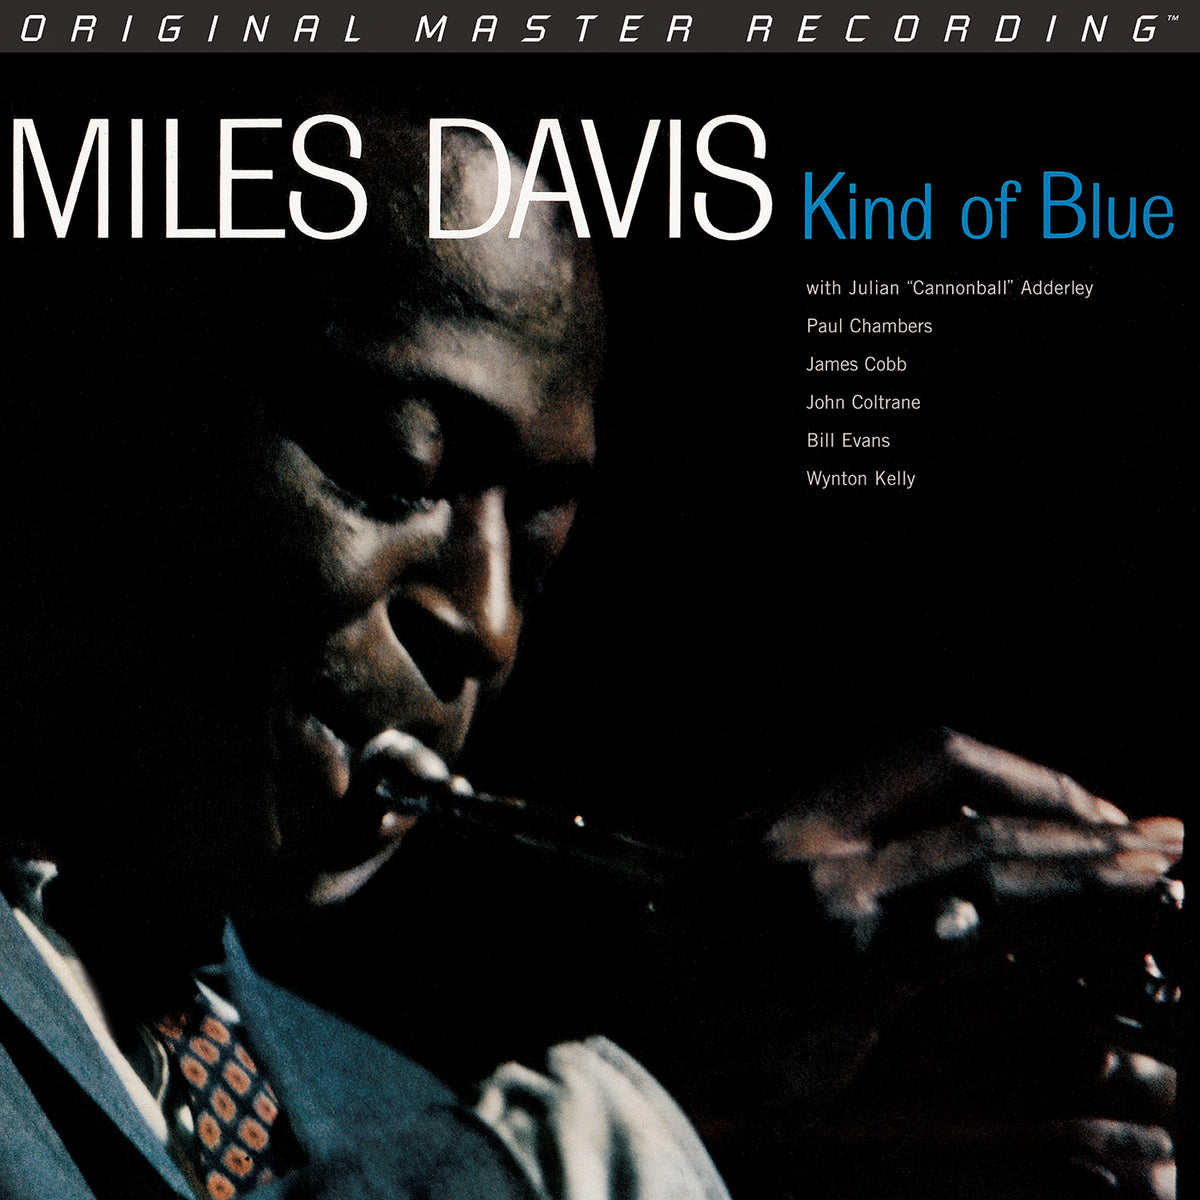 Miles Davis - Kind Of Blue 2LP (Mobile Fidelity 45rpm 2LP Audiophile, Limited Edition)